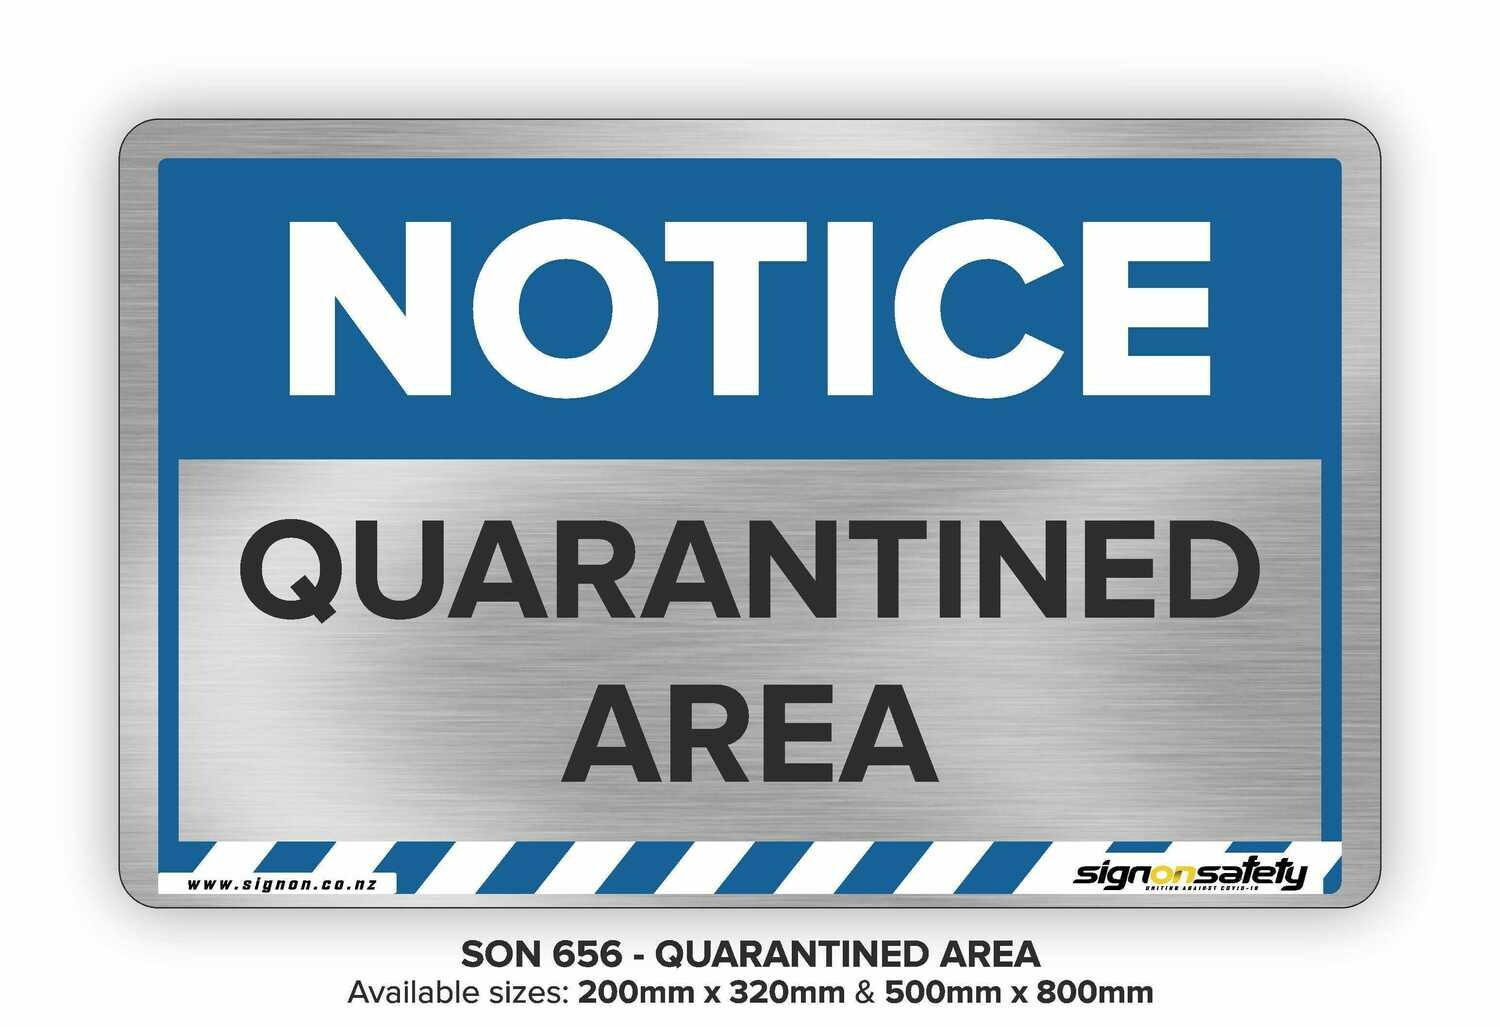 Notice - Quarantined Area